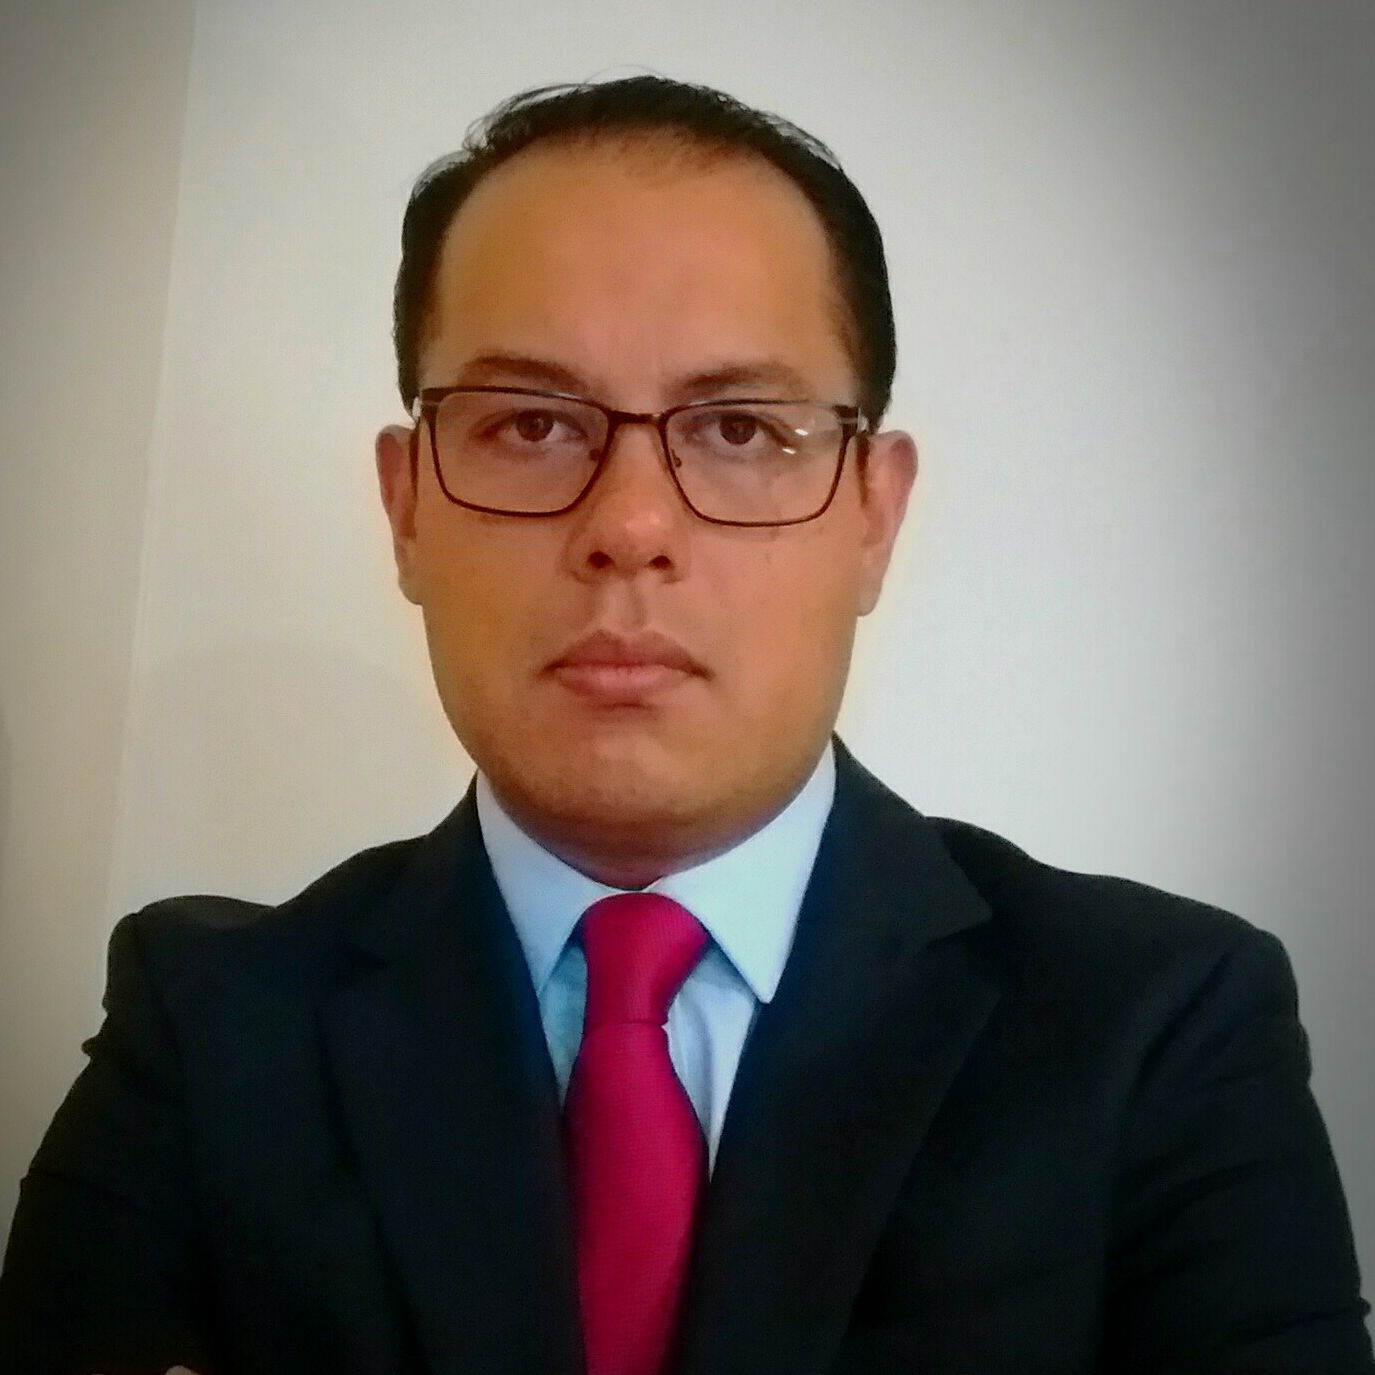 Dr. Gerardo Antonio Mejia Almazan